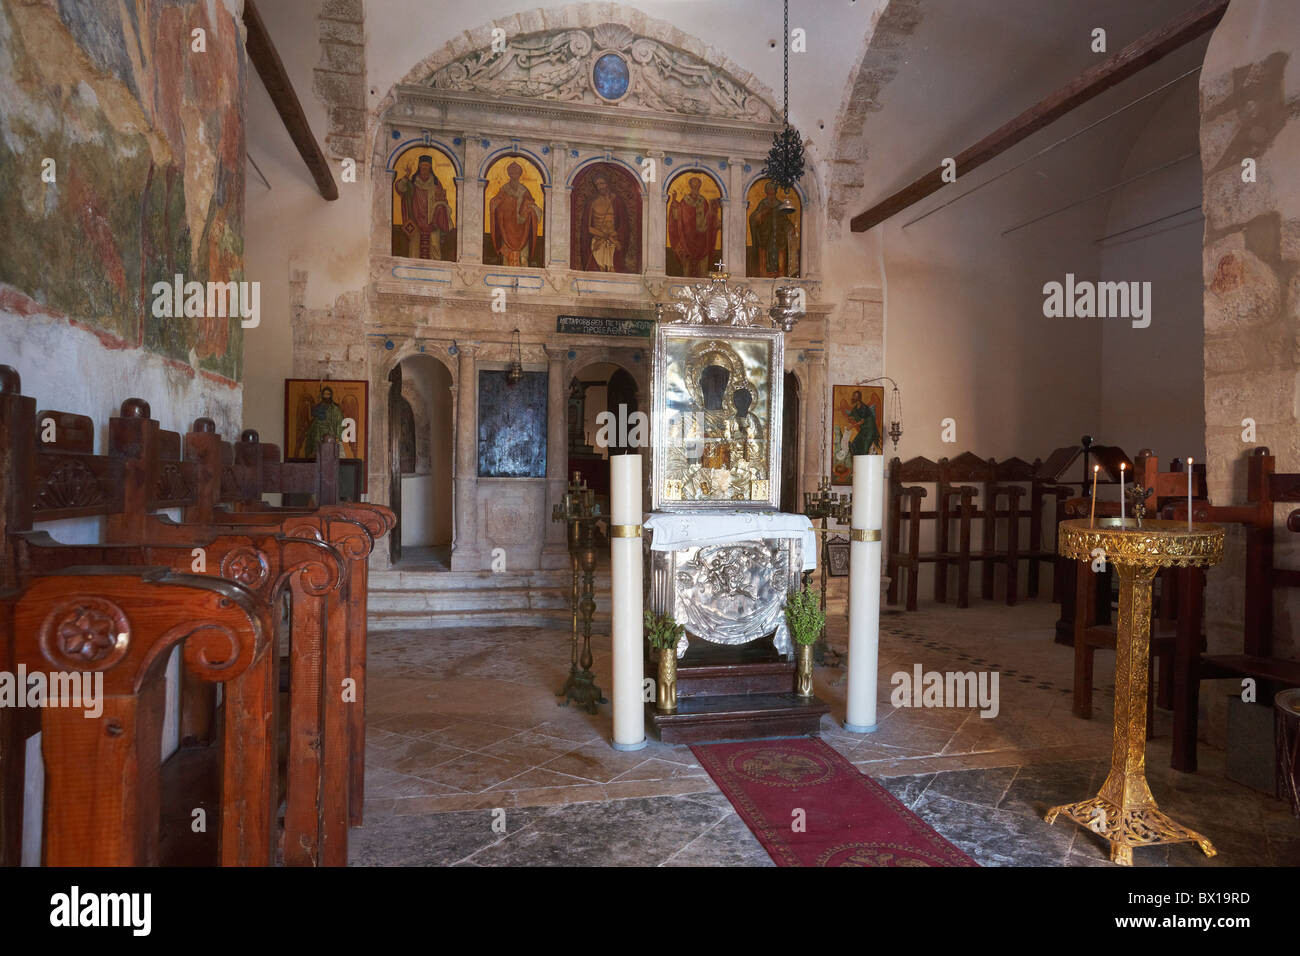 L'île de Zakynthos, Grèce - Mer Ionienne, église Byzantine à Skopos Banque D'Images